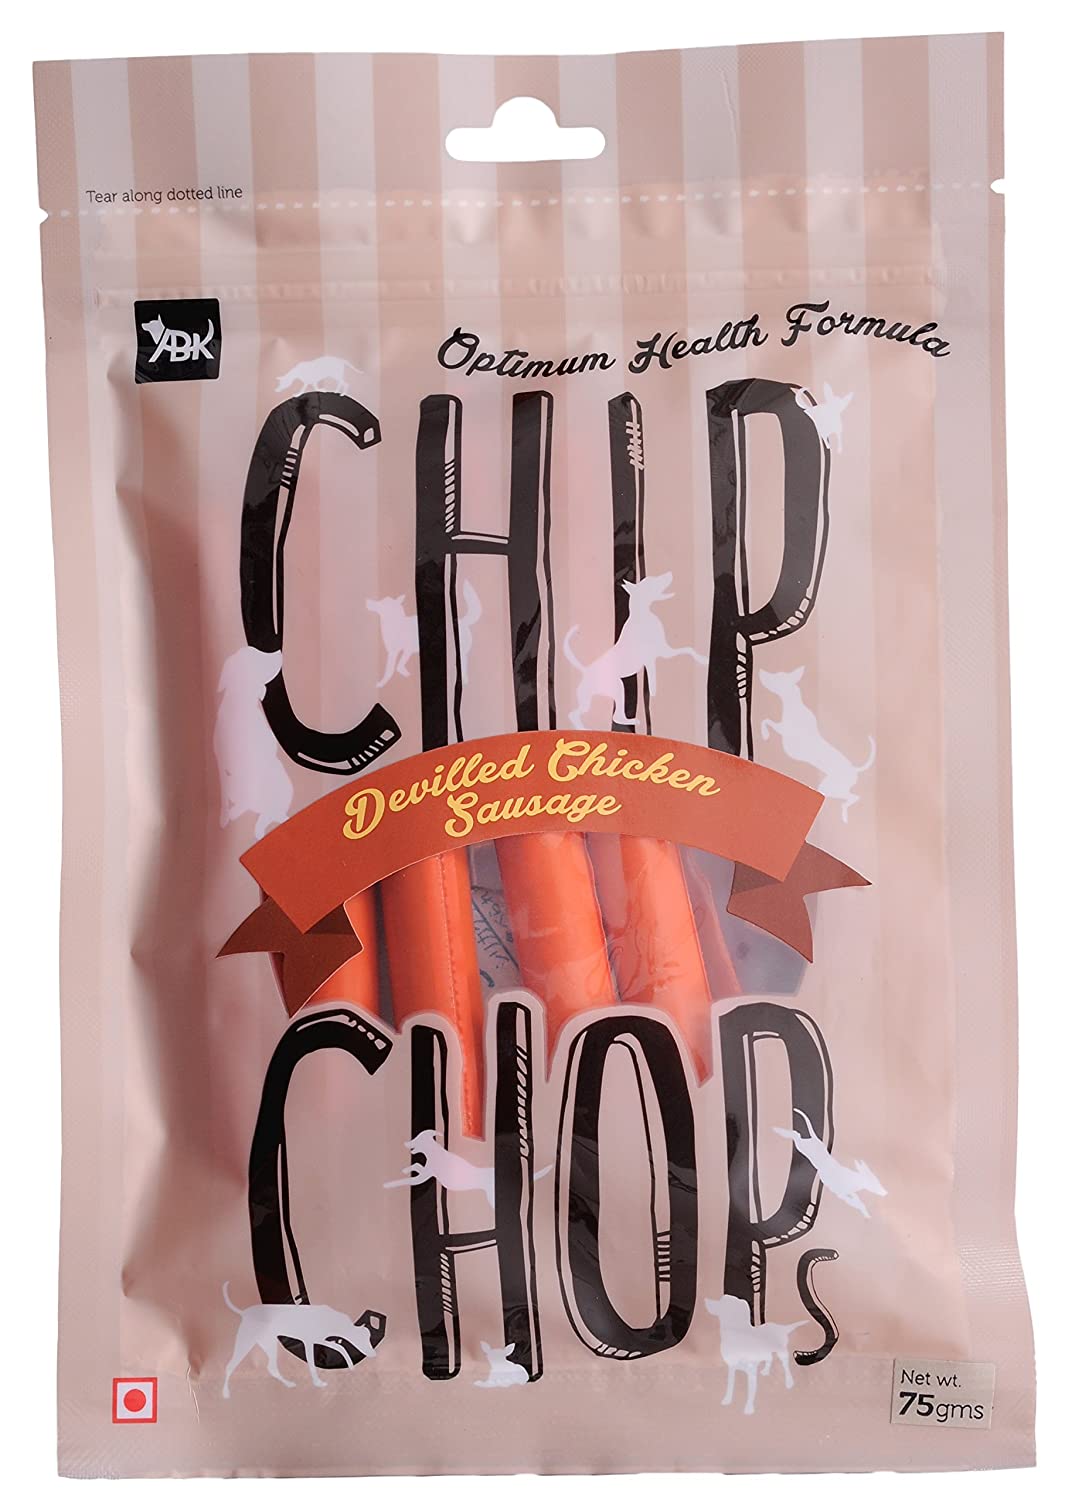 Chip Chops Dog Treat Devilled Chicken Sausage - 70g - DogzKart World